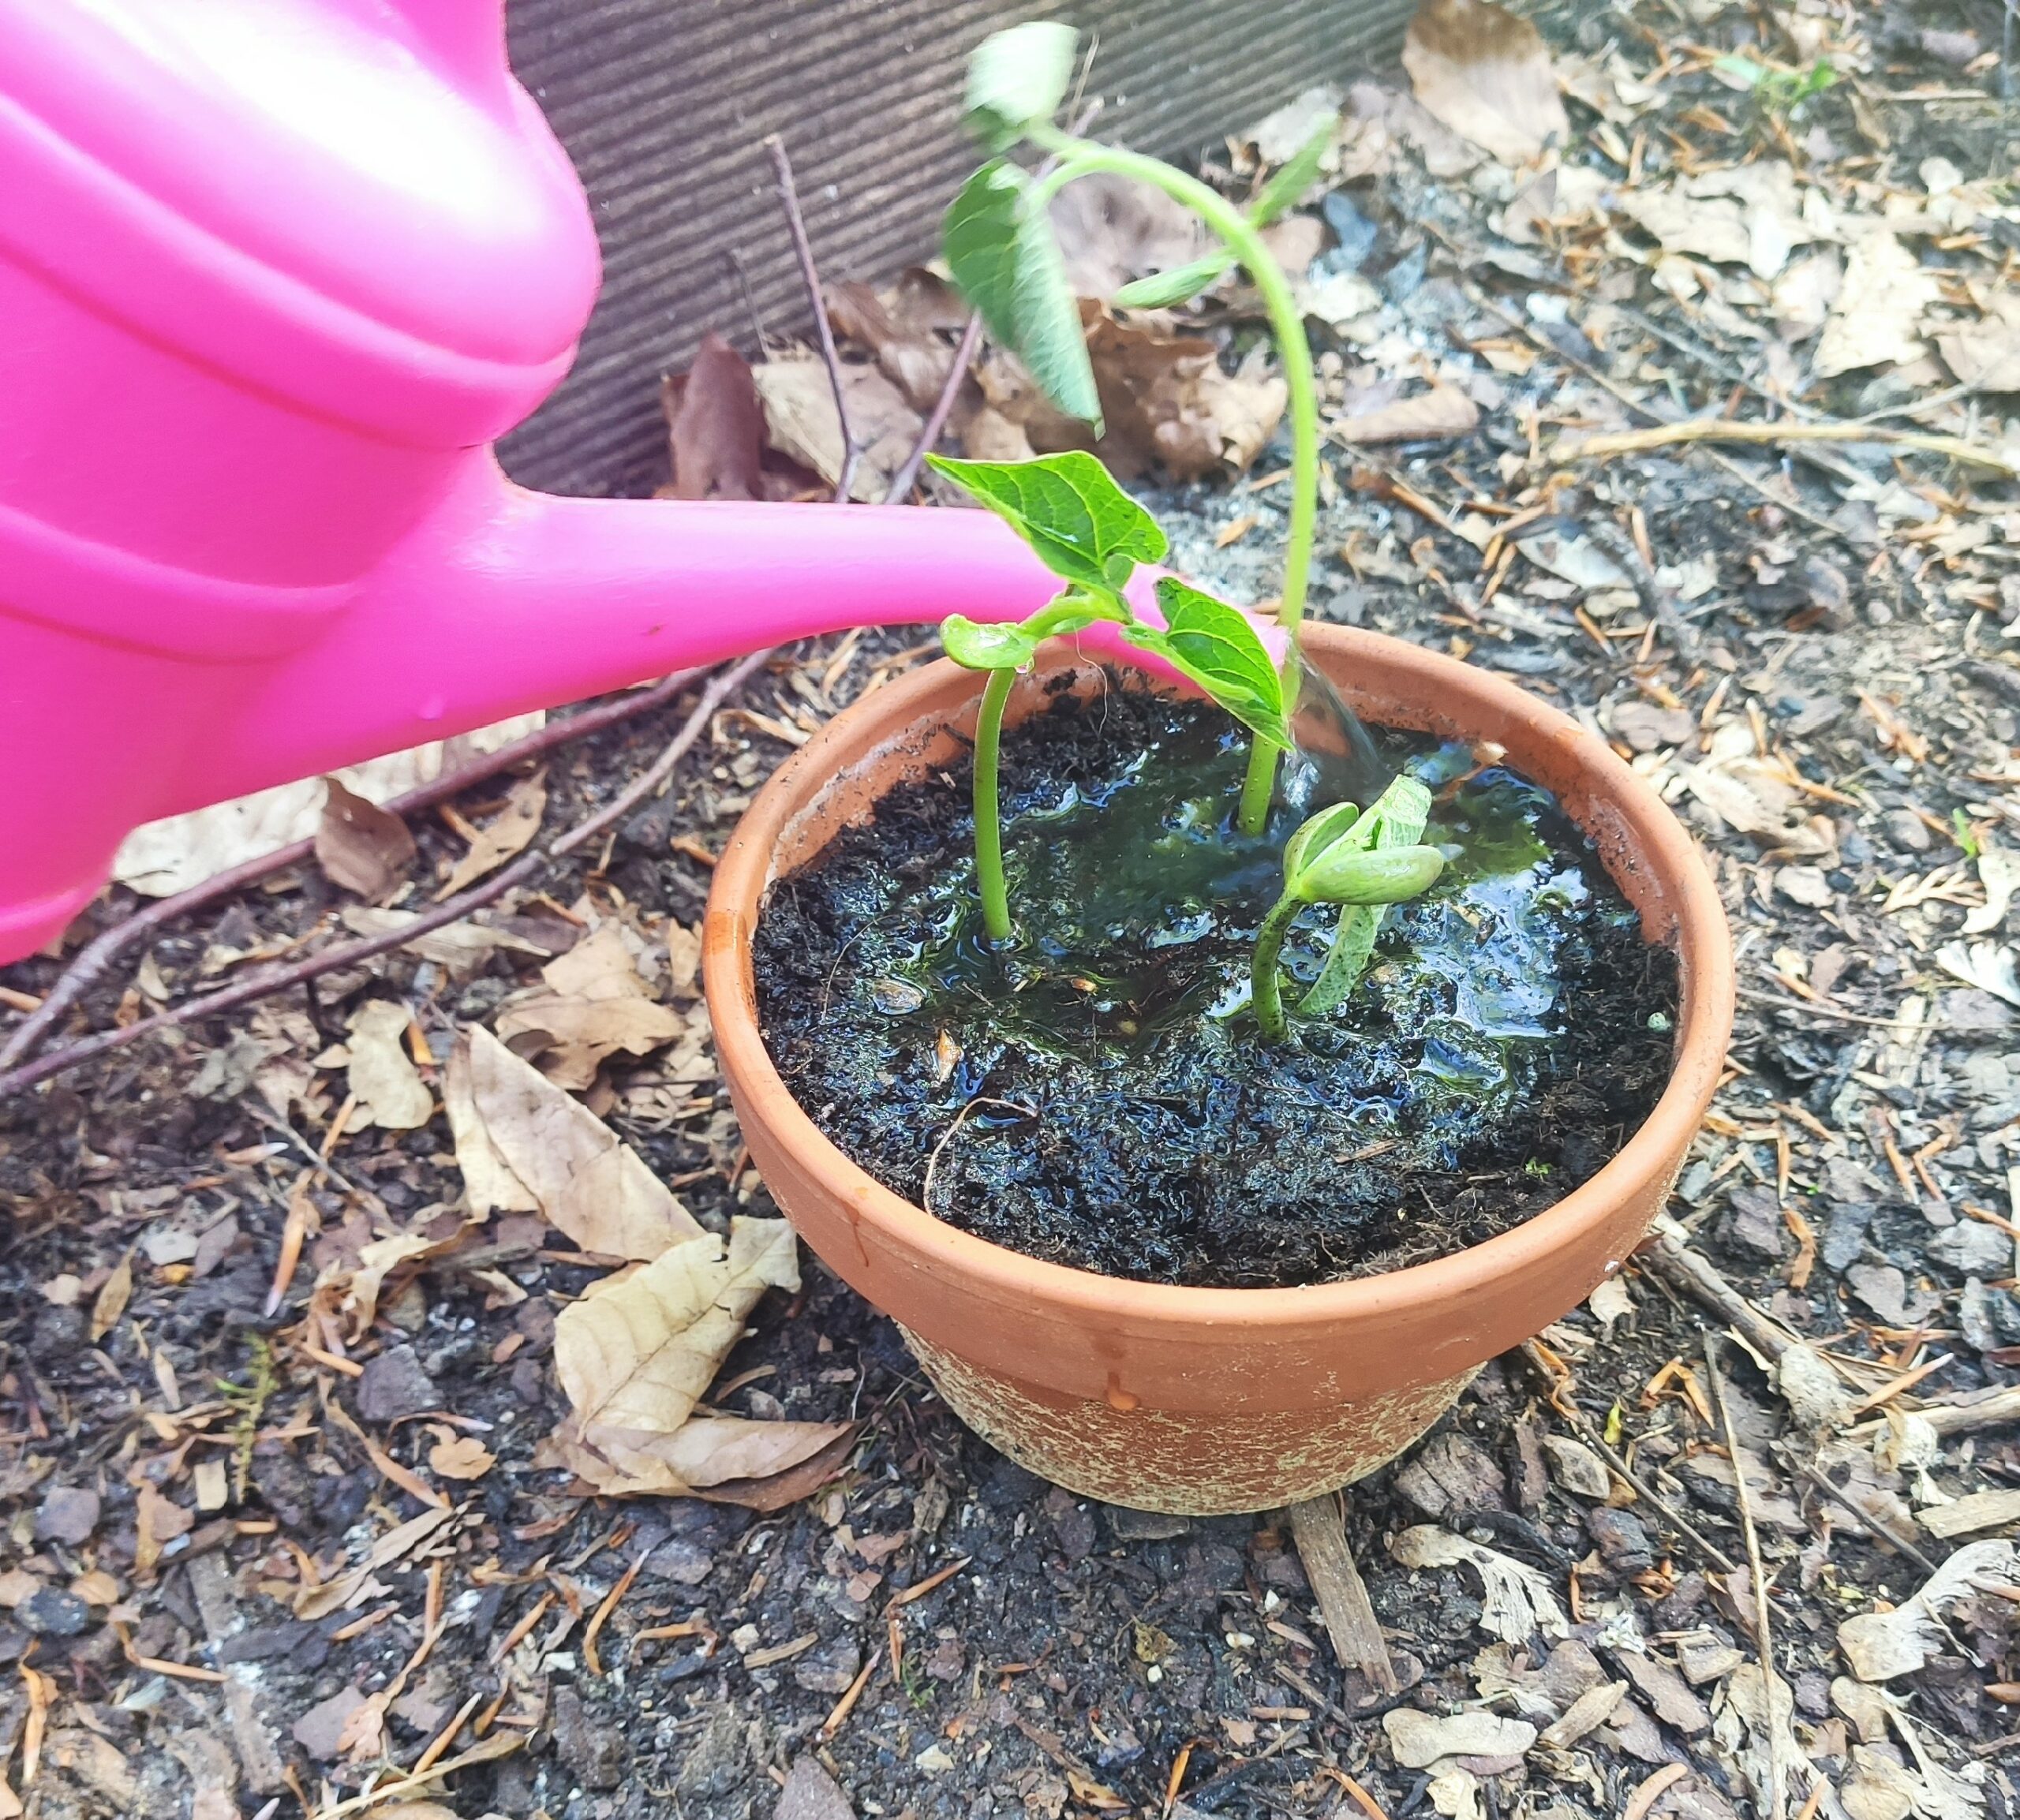 Bild zum Schritt 18 für das Bastel- und DIY-Abenteuer für Kinder: 'Zum Schluss gießt ihr die frisch eingesetzten Pflanzen vorsichtig. ...'